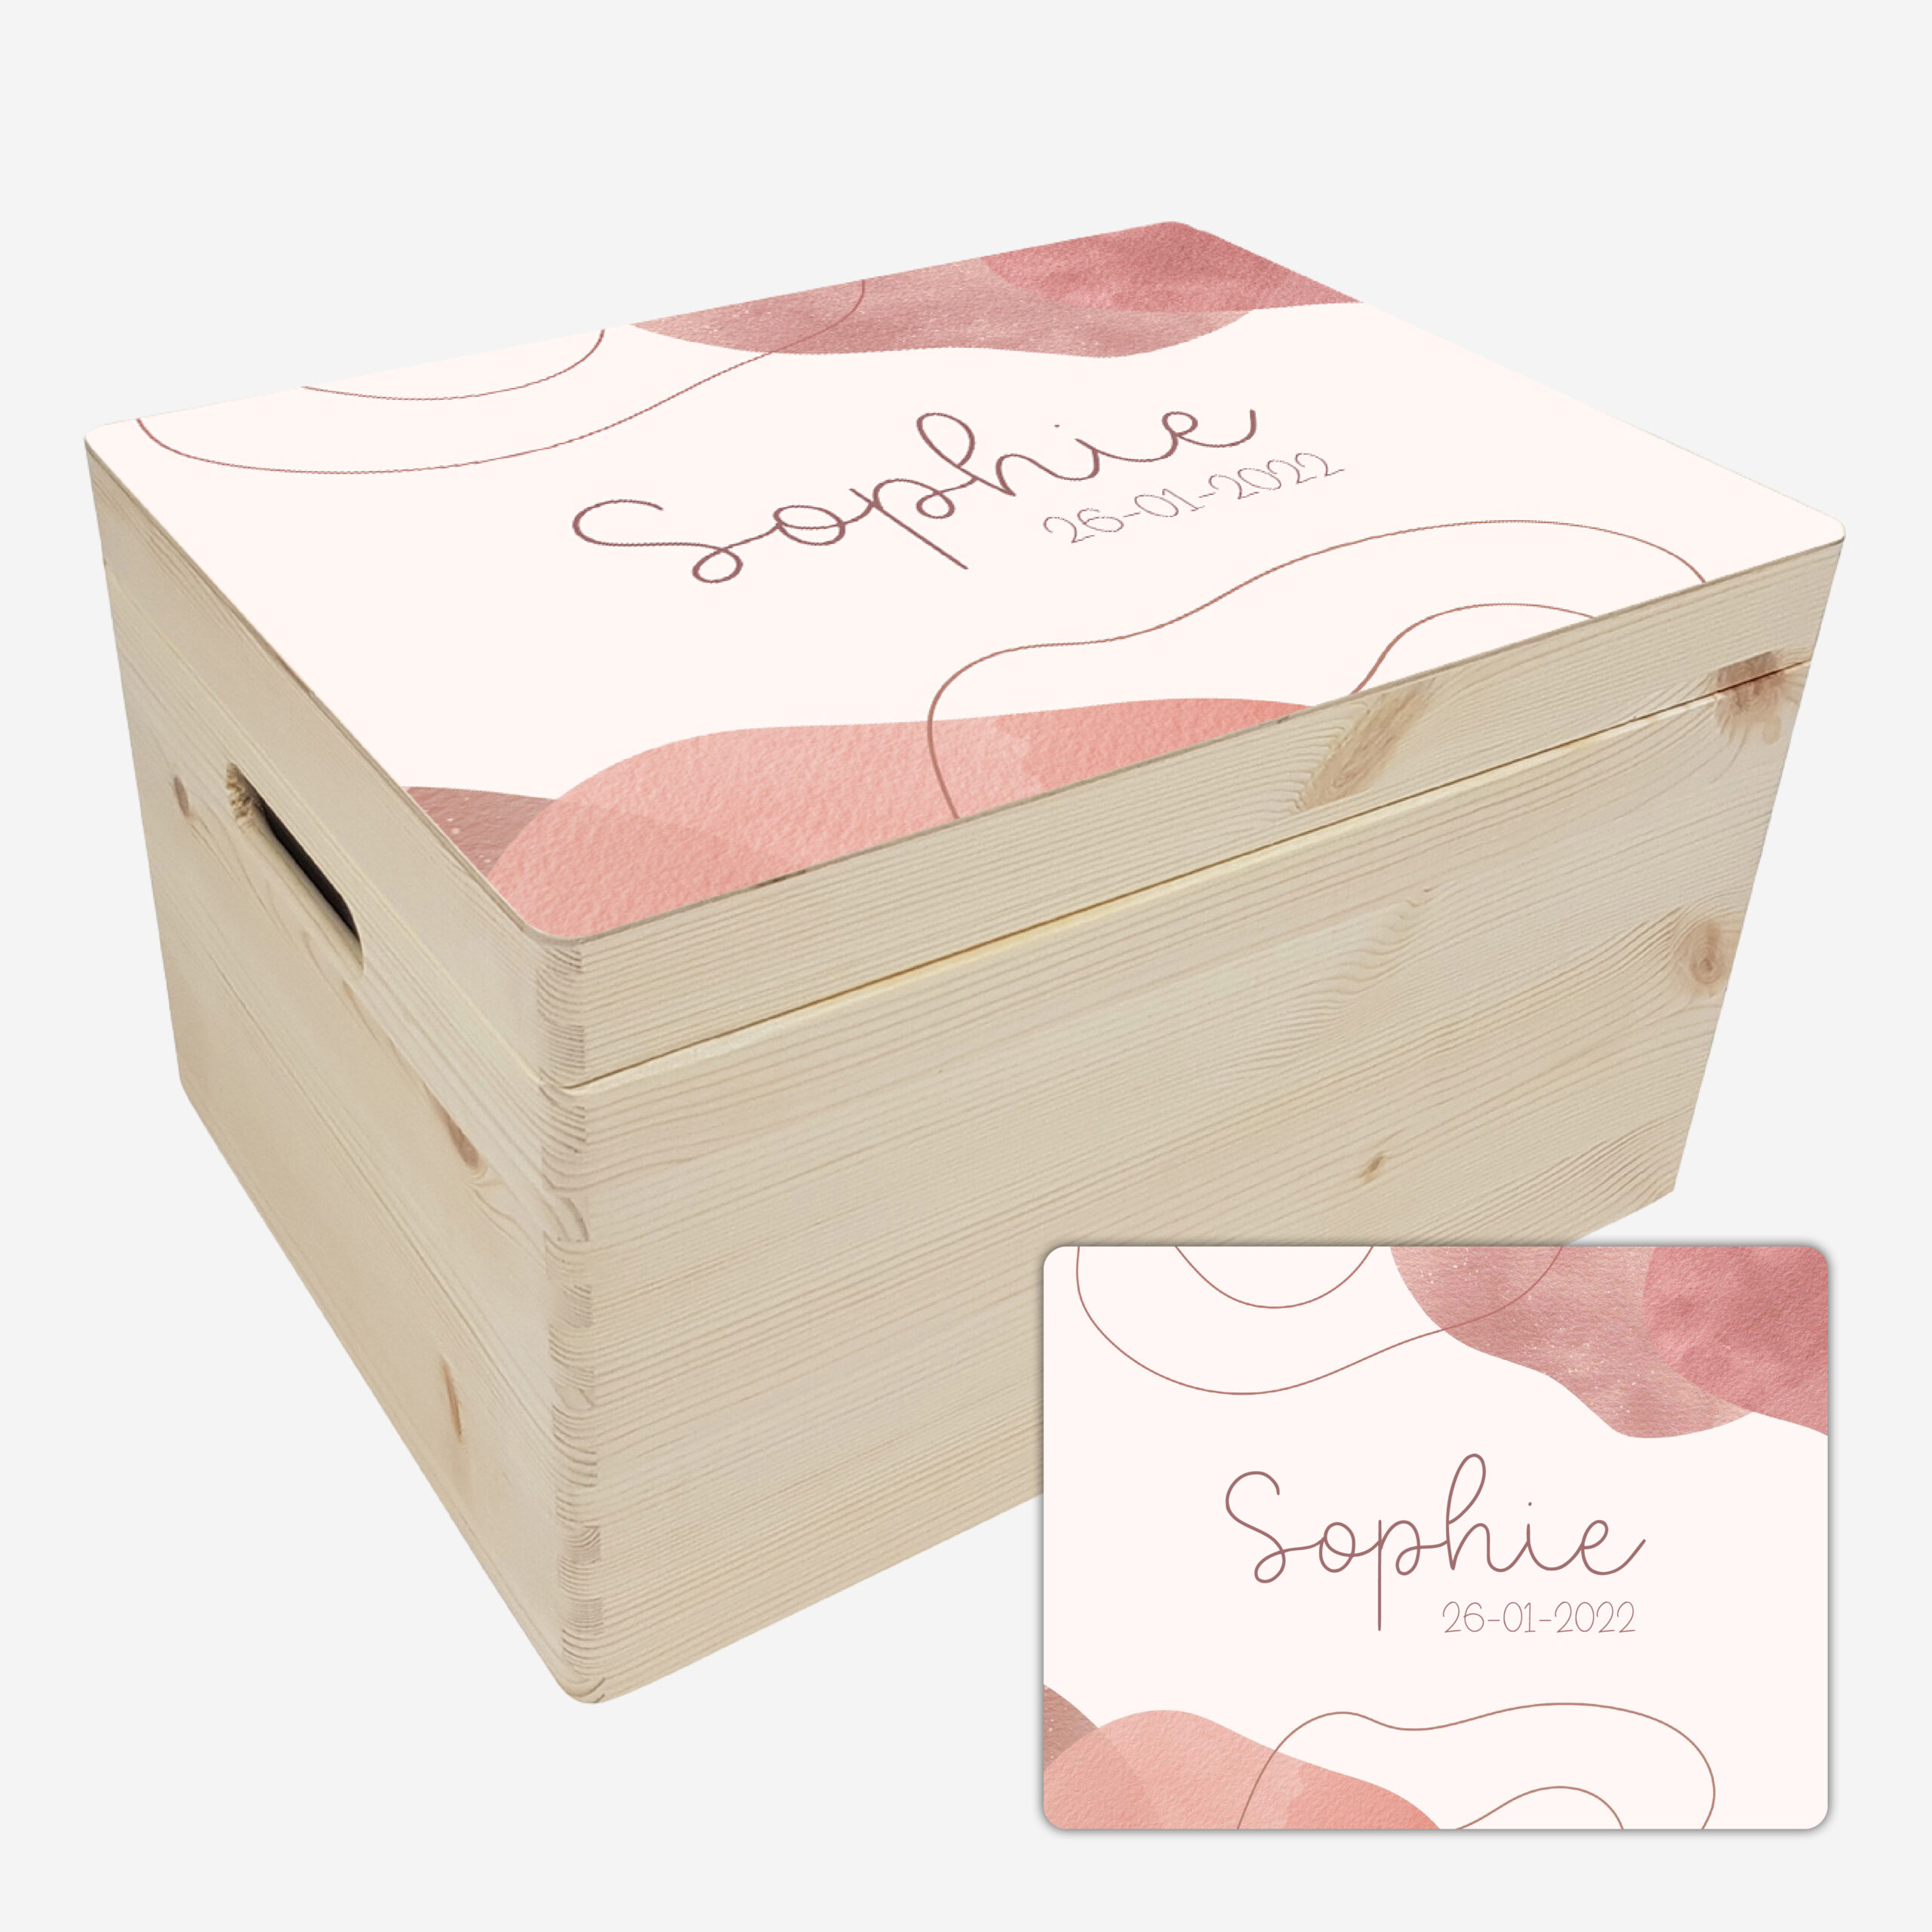 Blanke box middel met voorbeeld aqua roze scaled